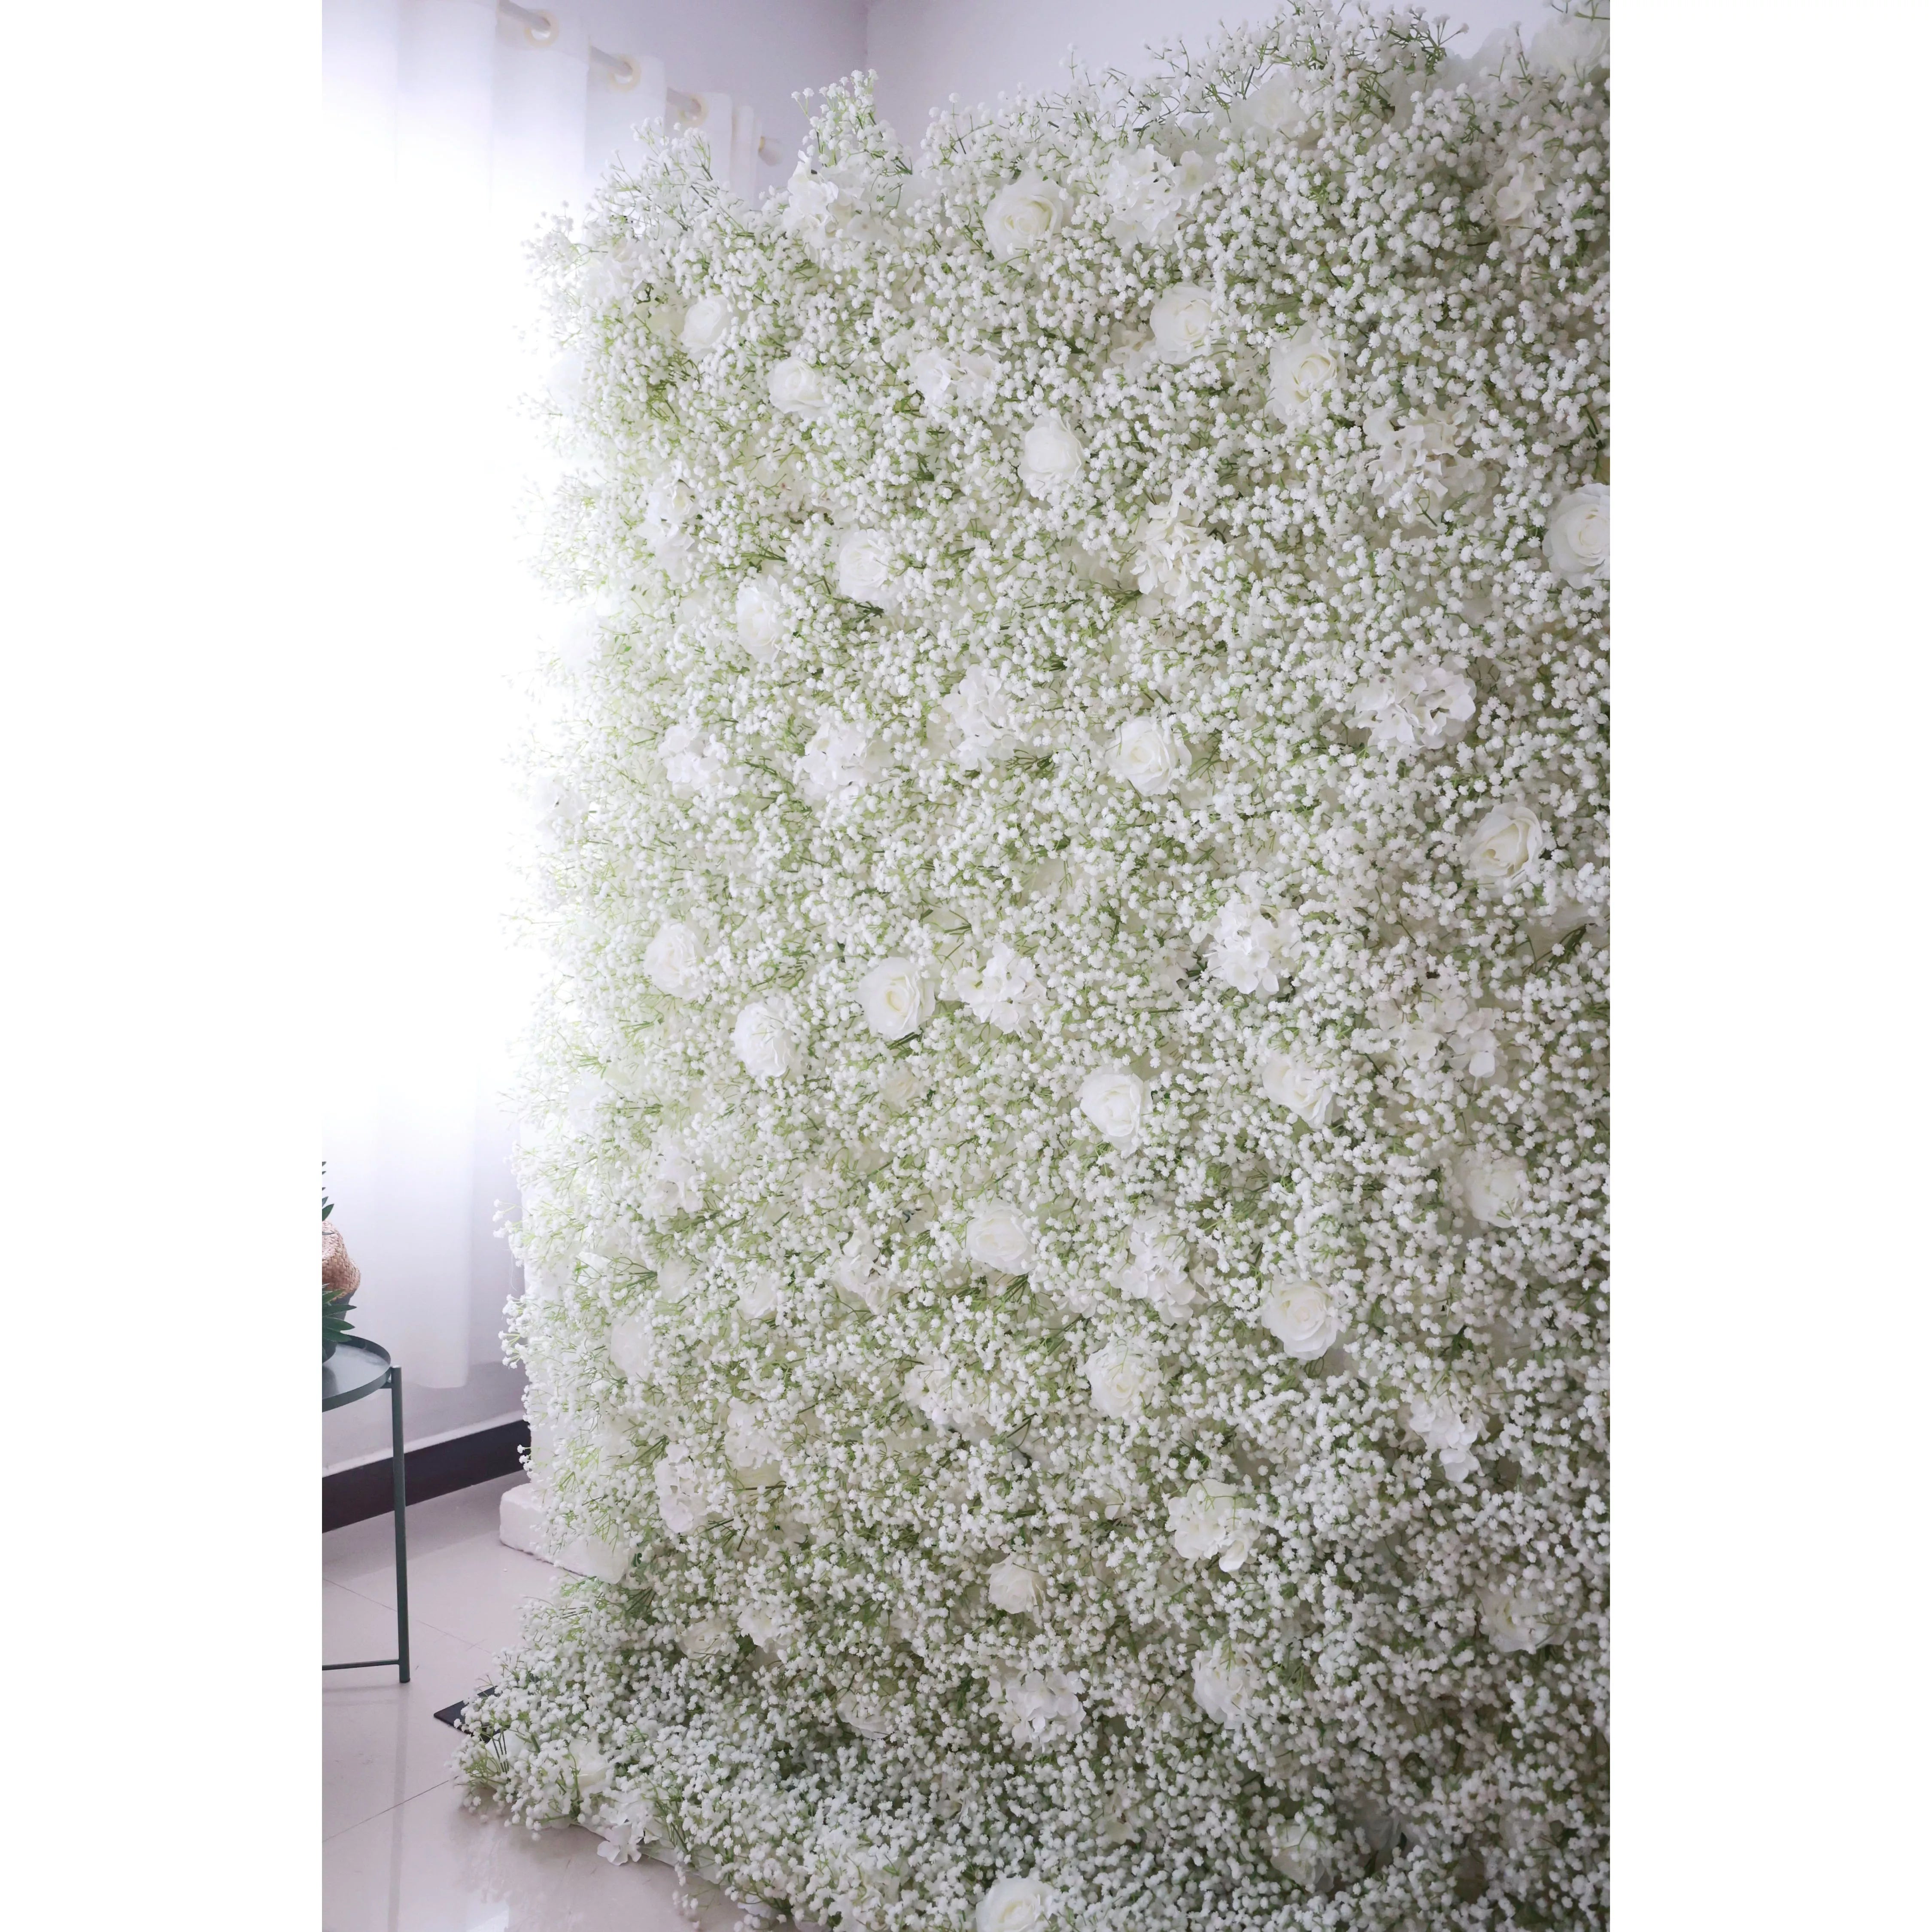 خلفية جدار زهور اصطناعية فالارر: خلفية جدارية زهور اصطناعية للحديقة الاليزية: أزهار زهرة بيضاء أثيري